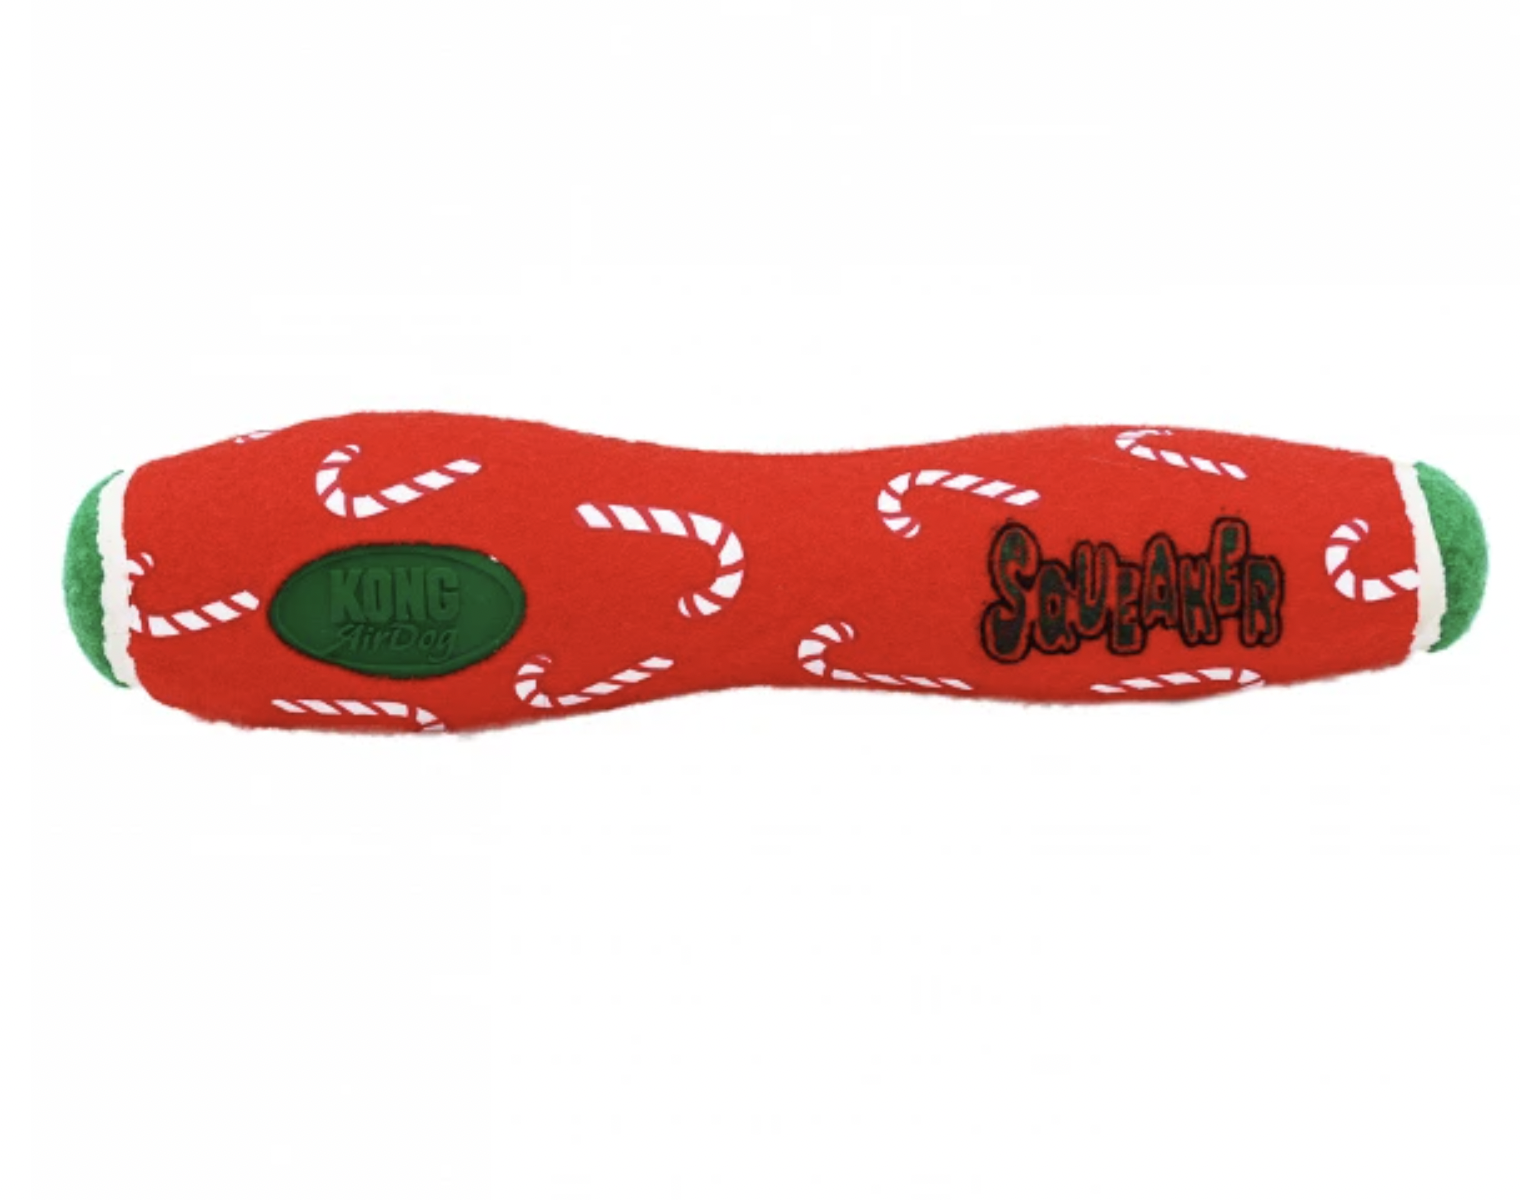 KONG AirDog Stick Christmas Dog Toy combines tennis ball & squeaker Non Abrasive